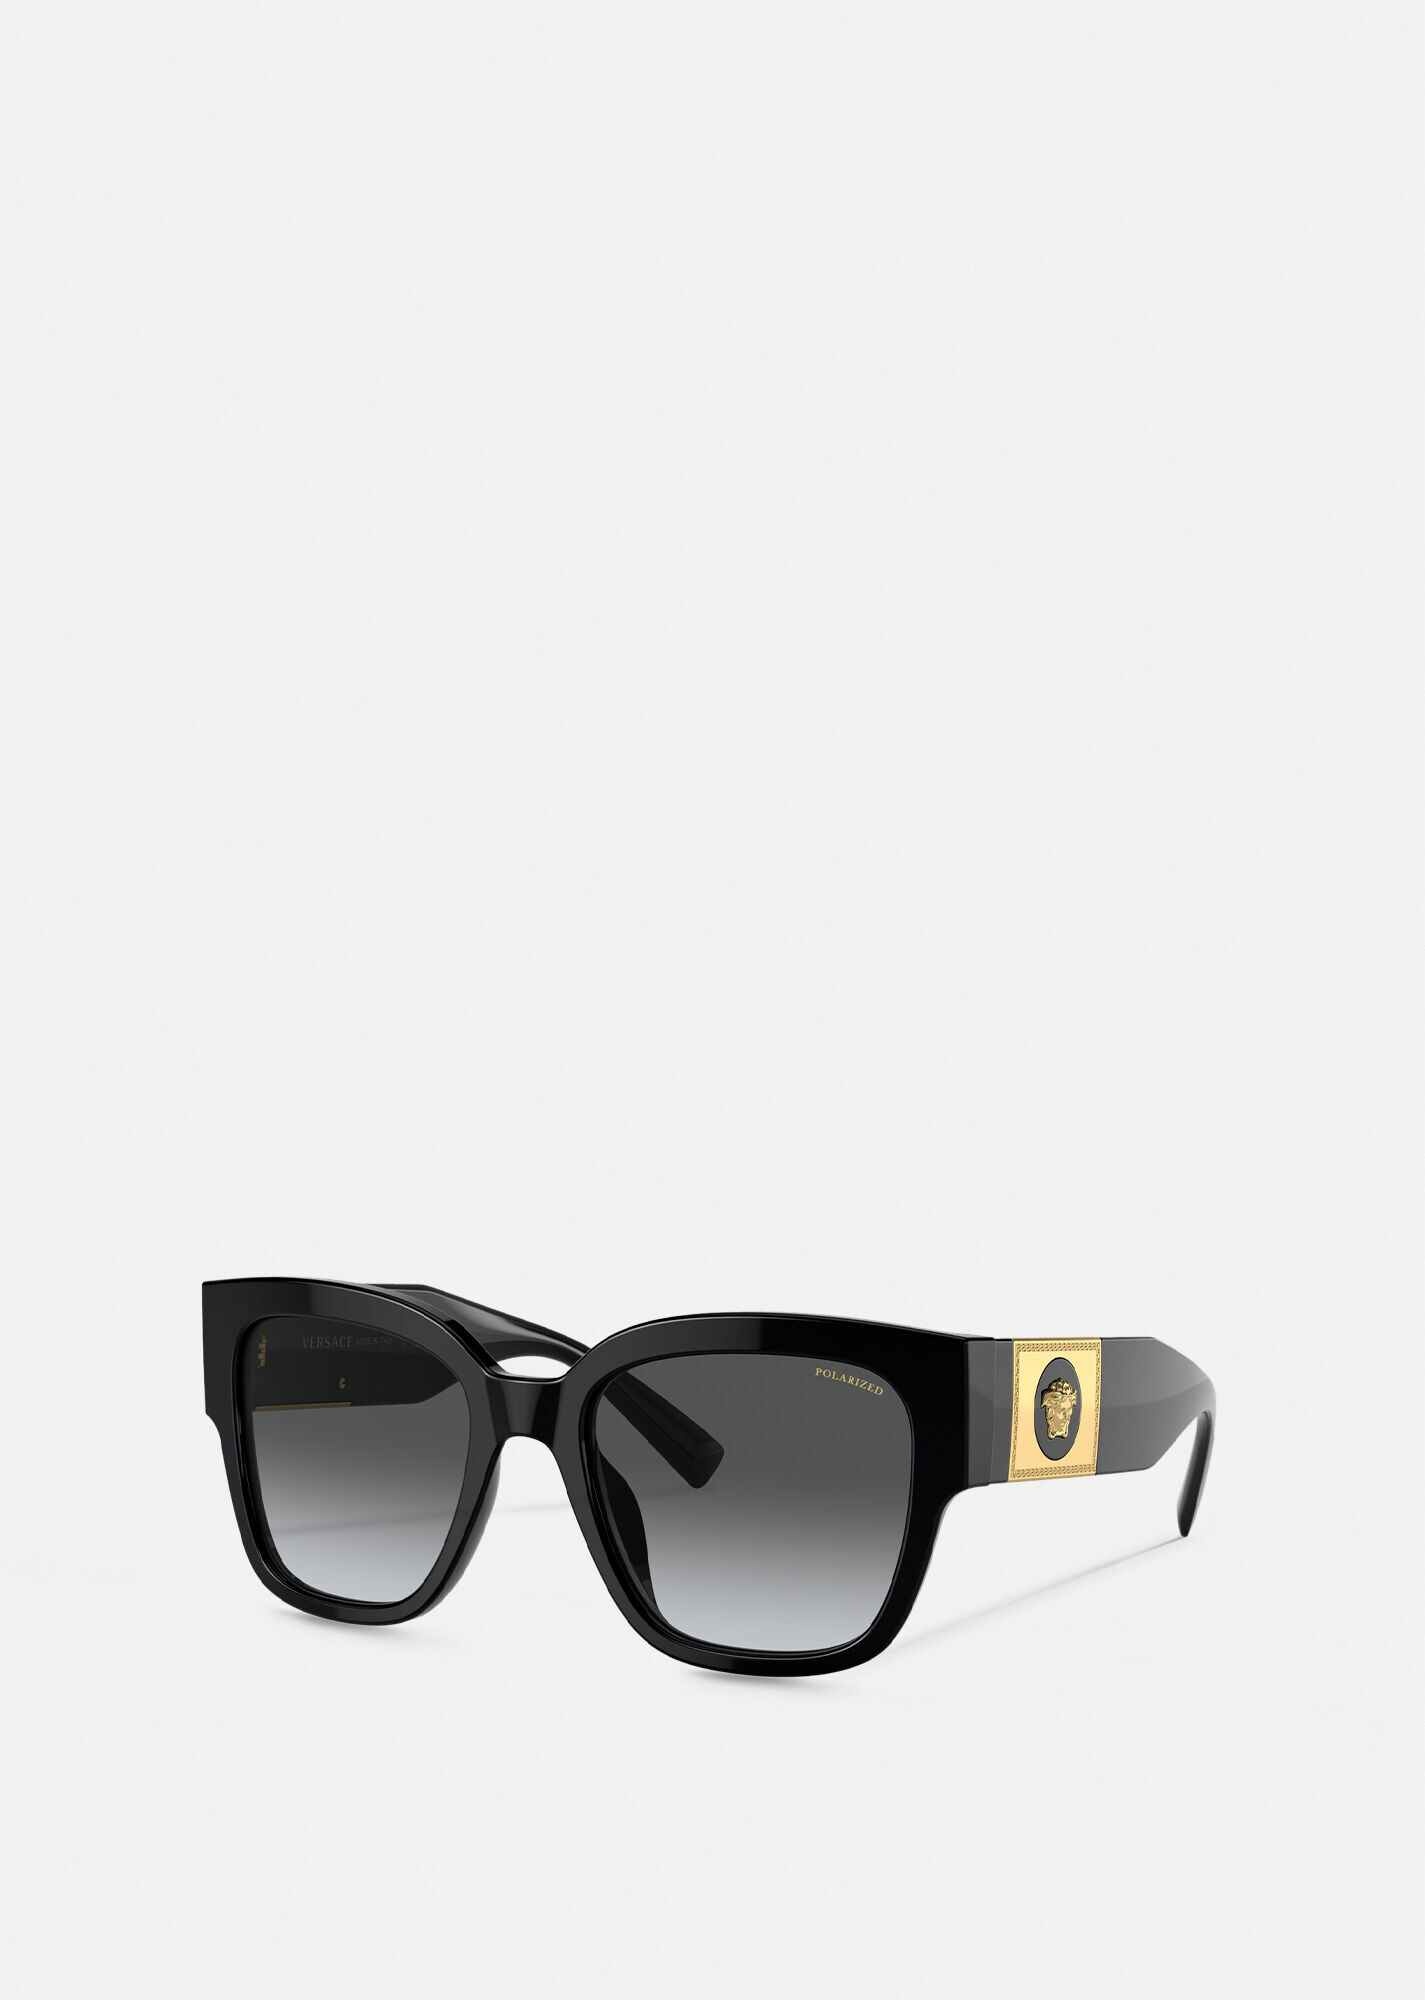 Black Sunglasses for Men - Macy's